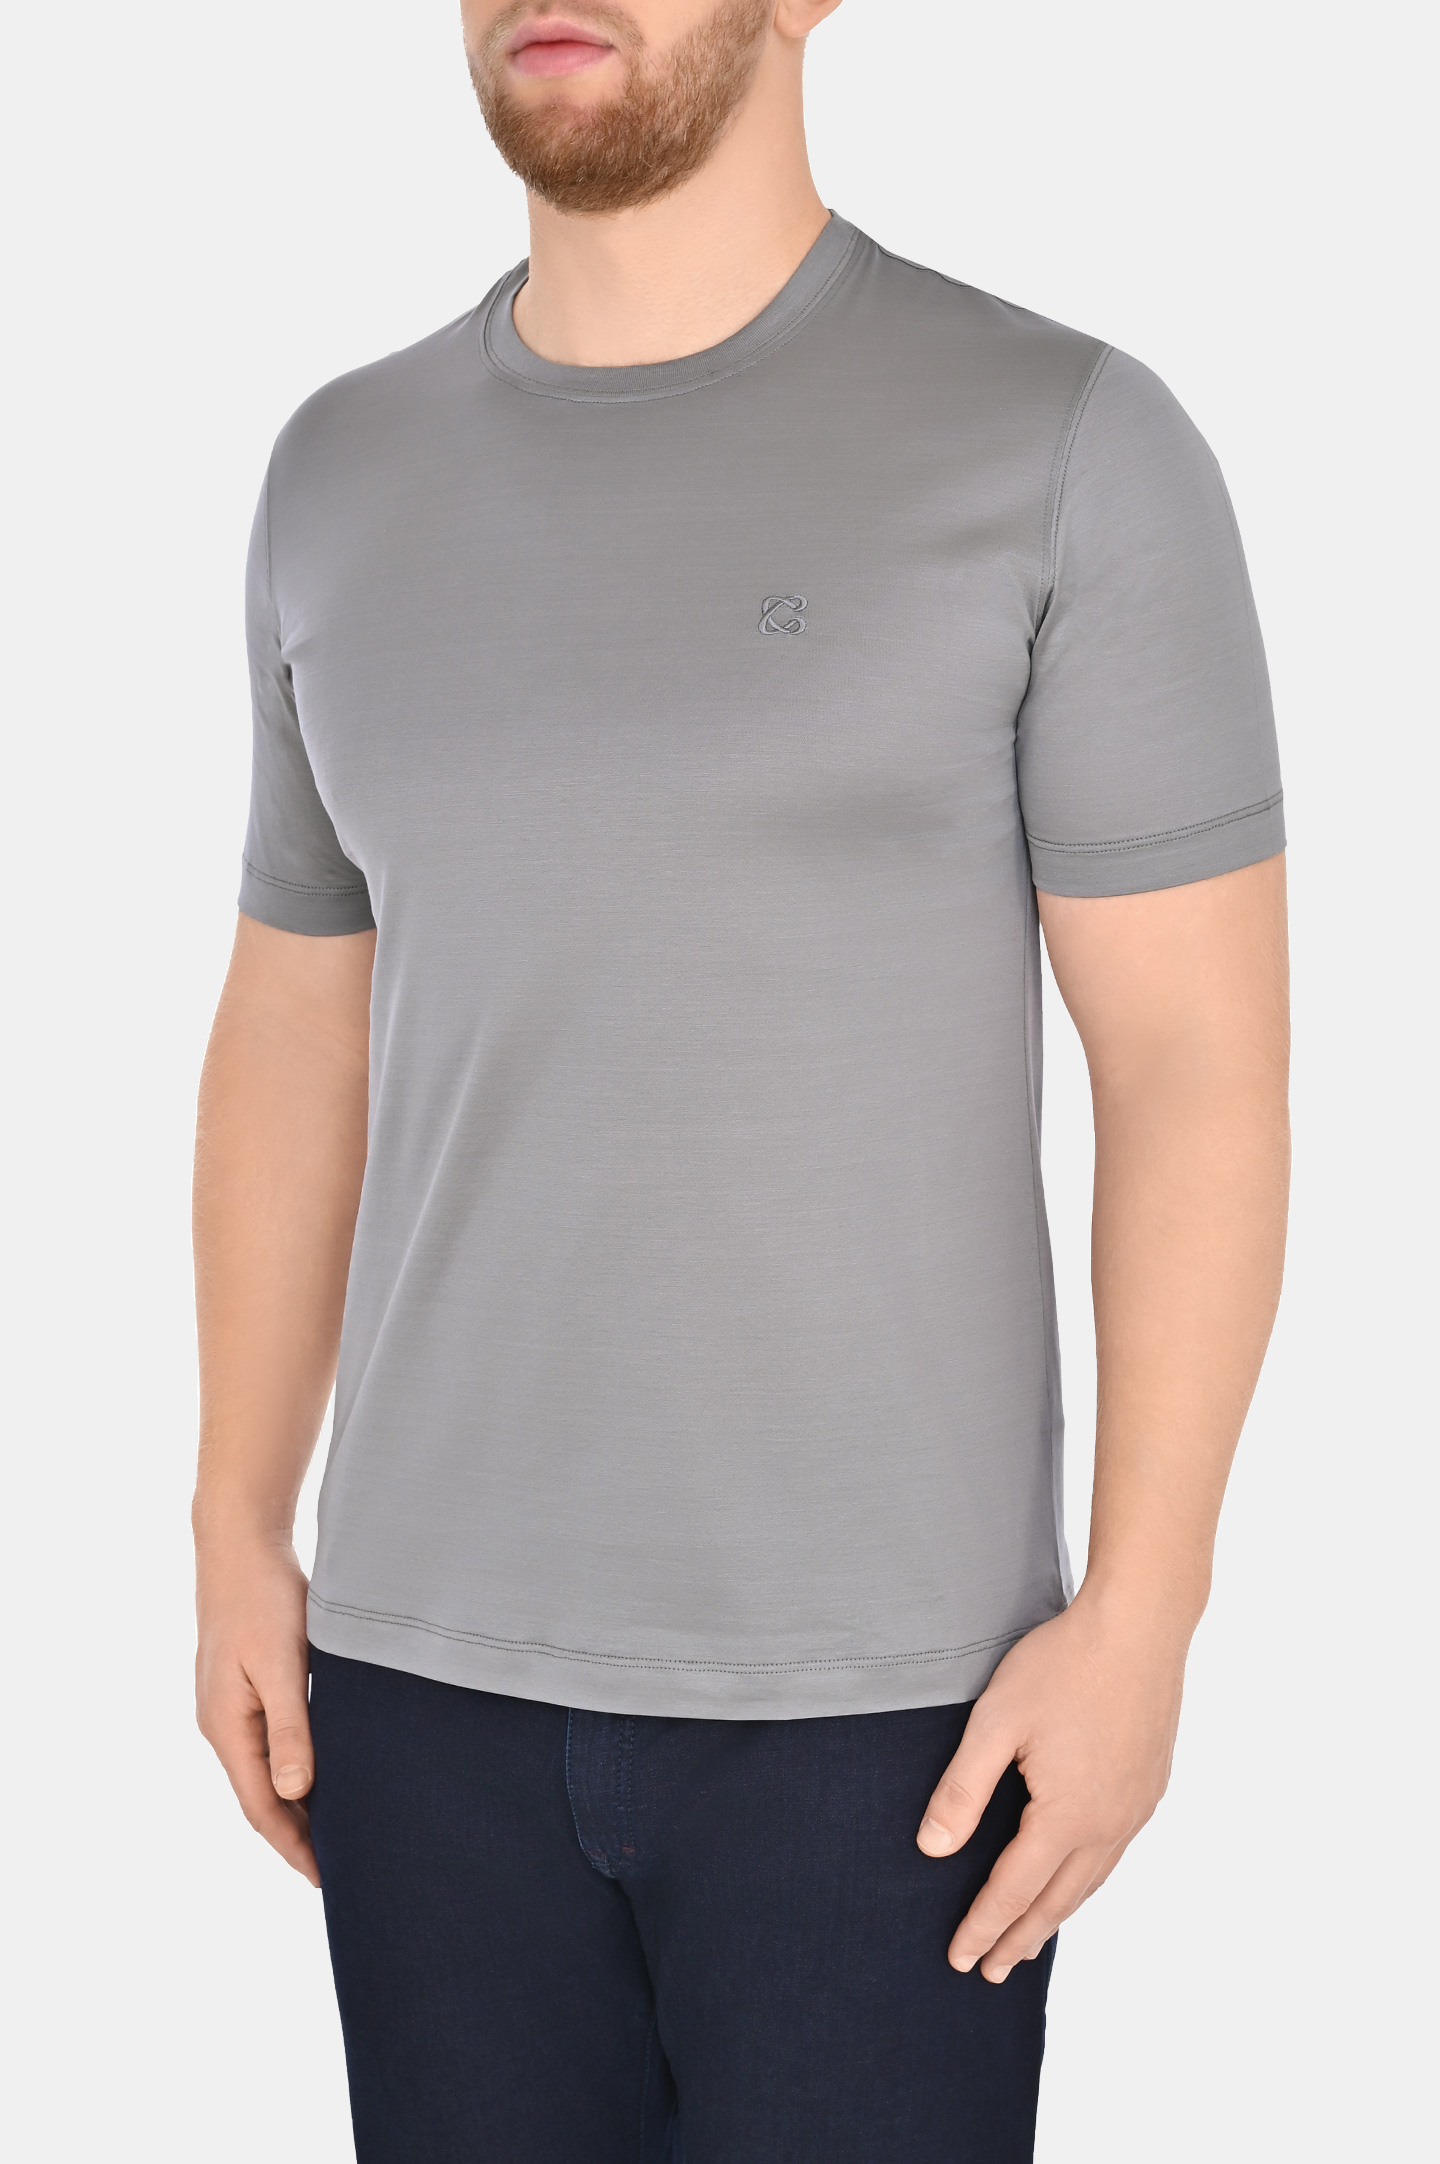 Базовая хлопковая футболка CASTANGIA DM66, цвет: Серый, Мужской